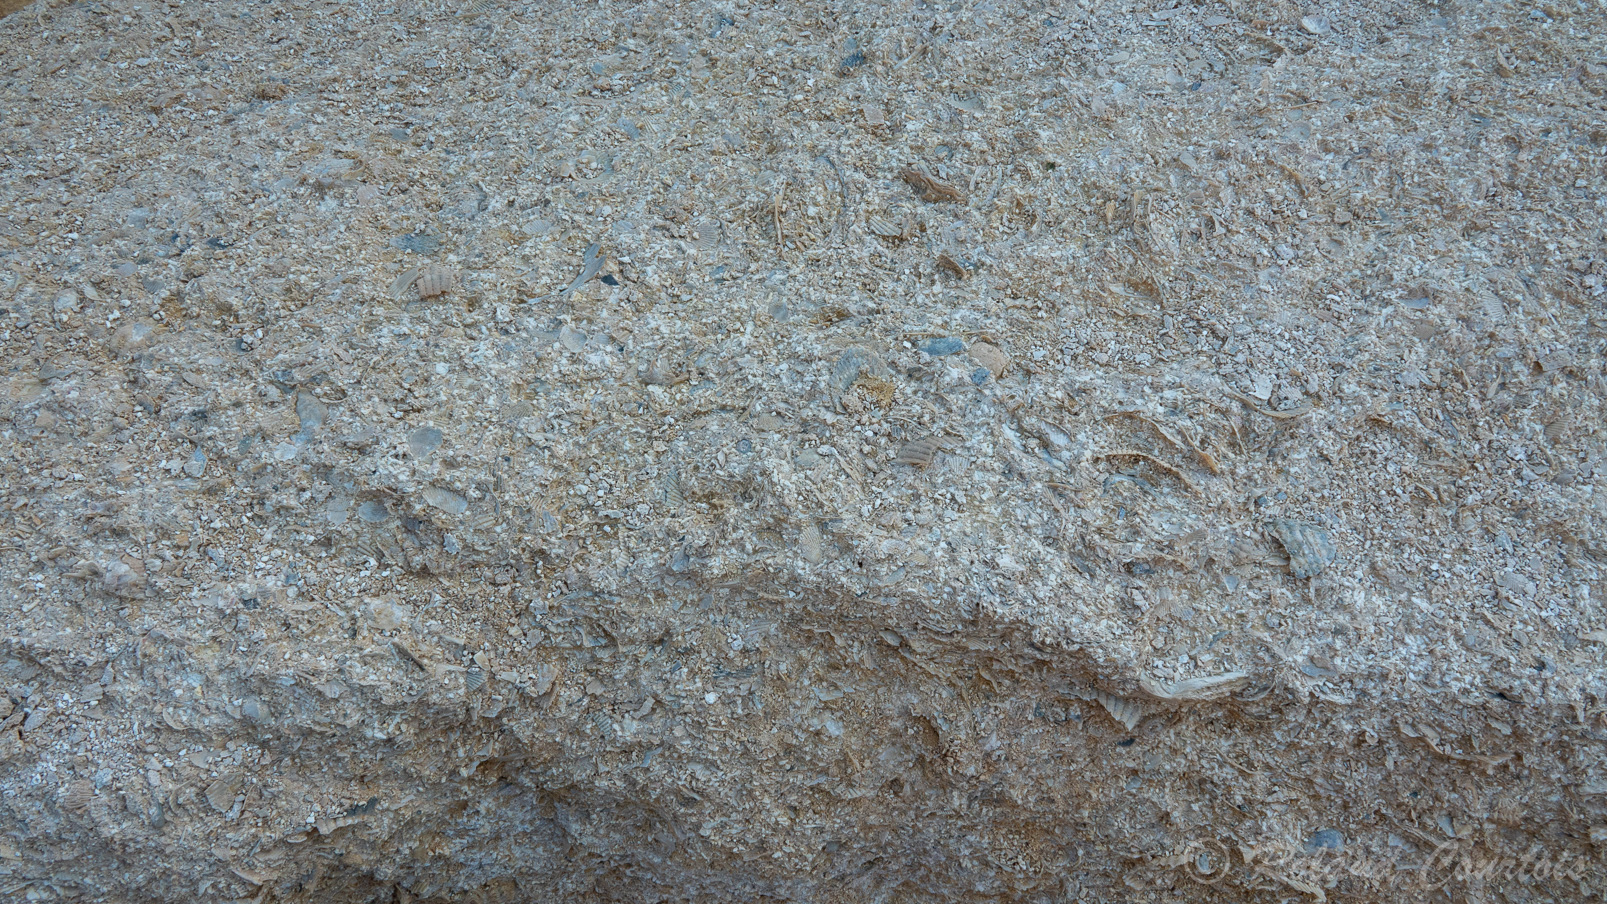 Plein de fossiles incrustés dans le sol.